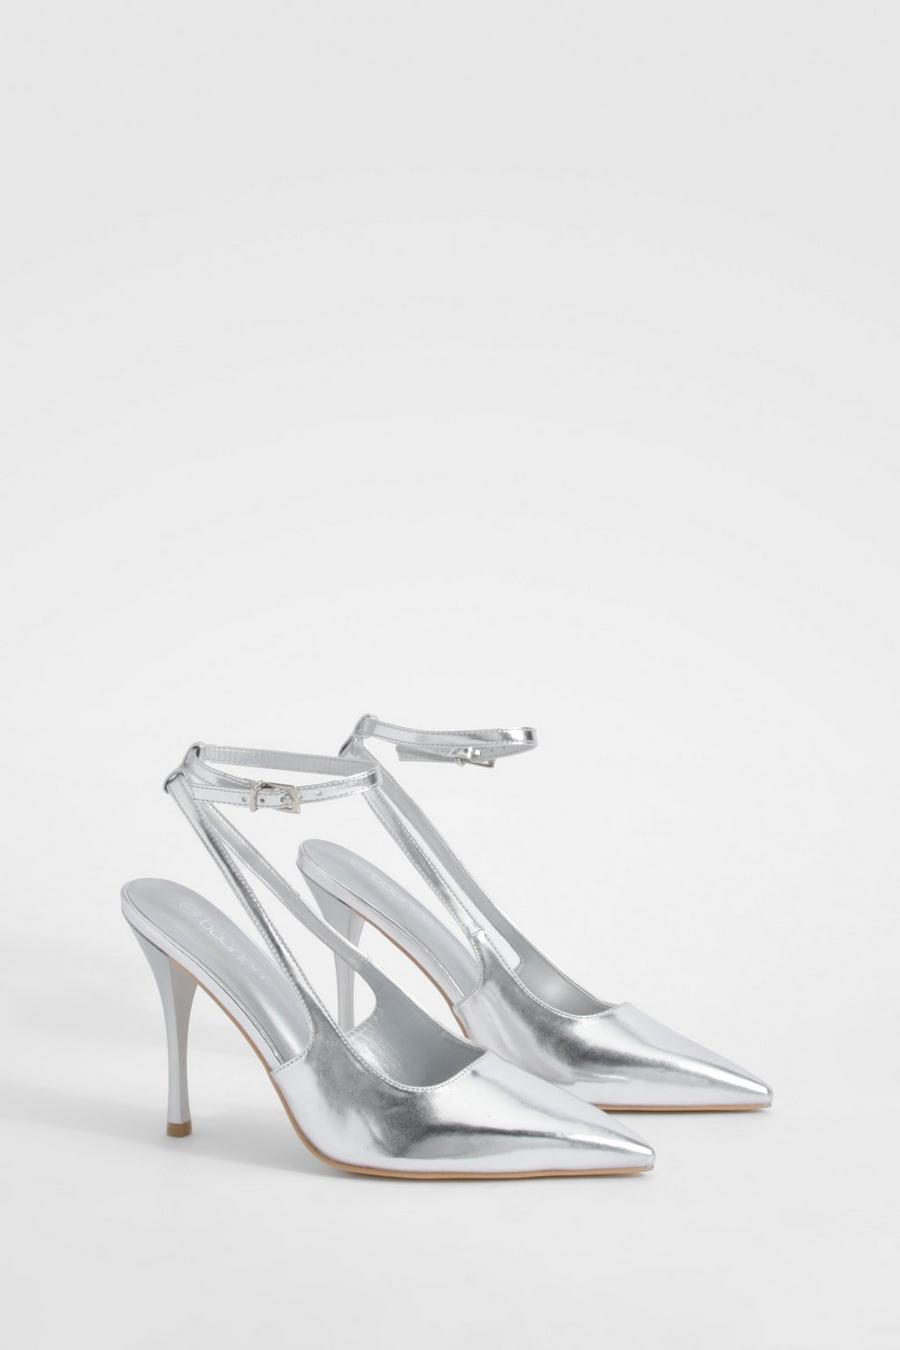 Zapatos de salón metálicos con abertura y cordones cruzados, Silver image number 1